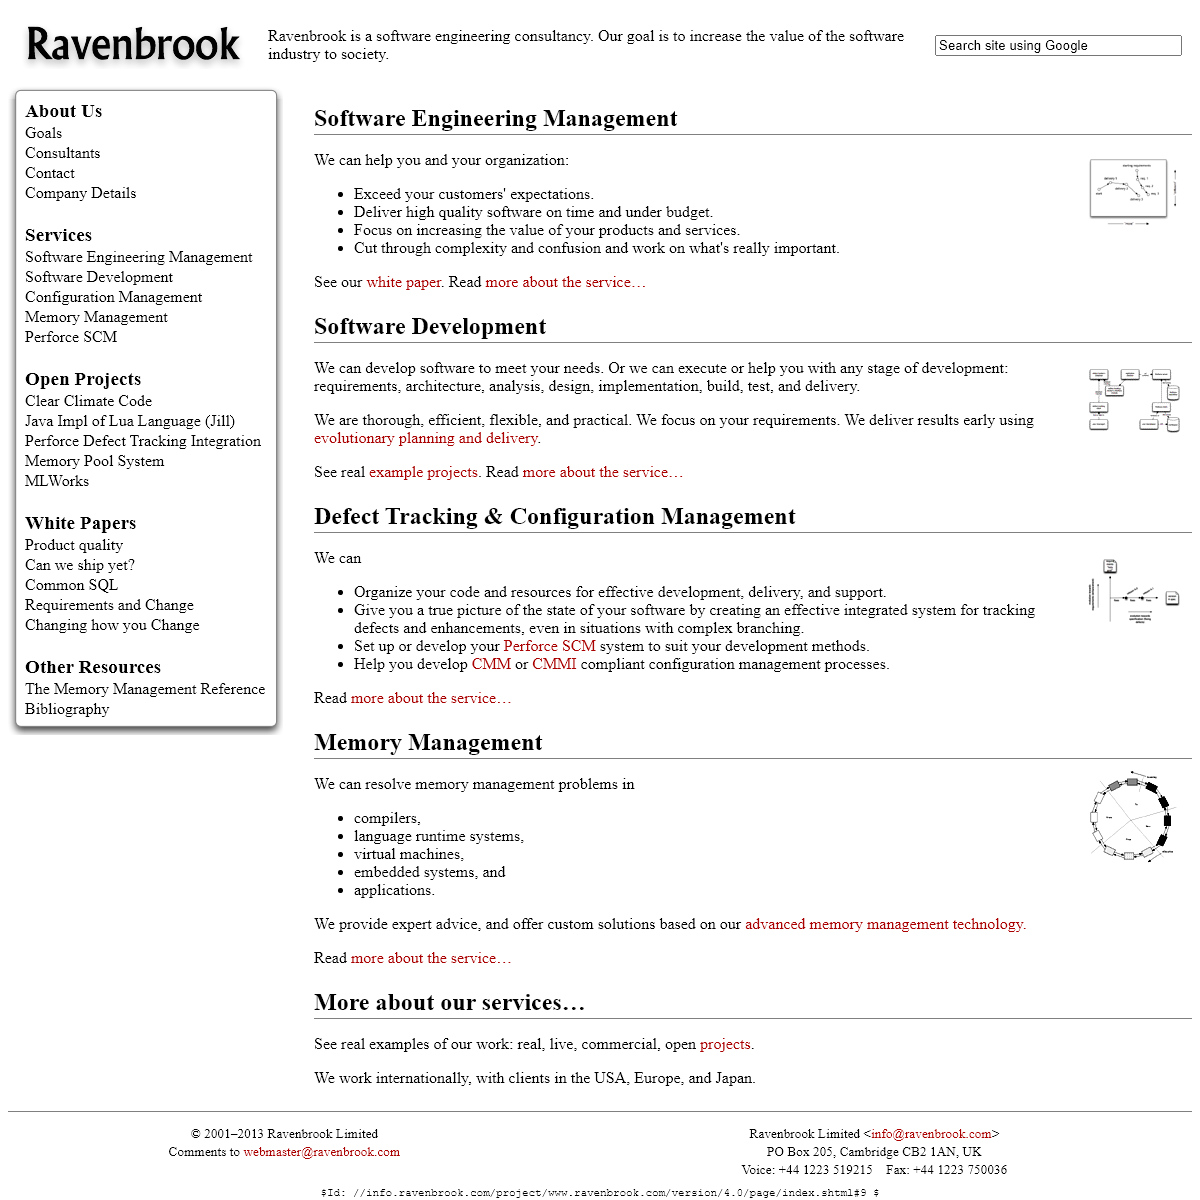 A complete backup of ravenbrook.com